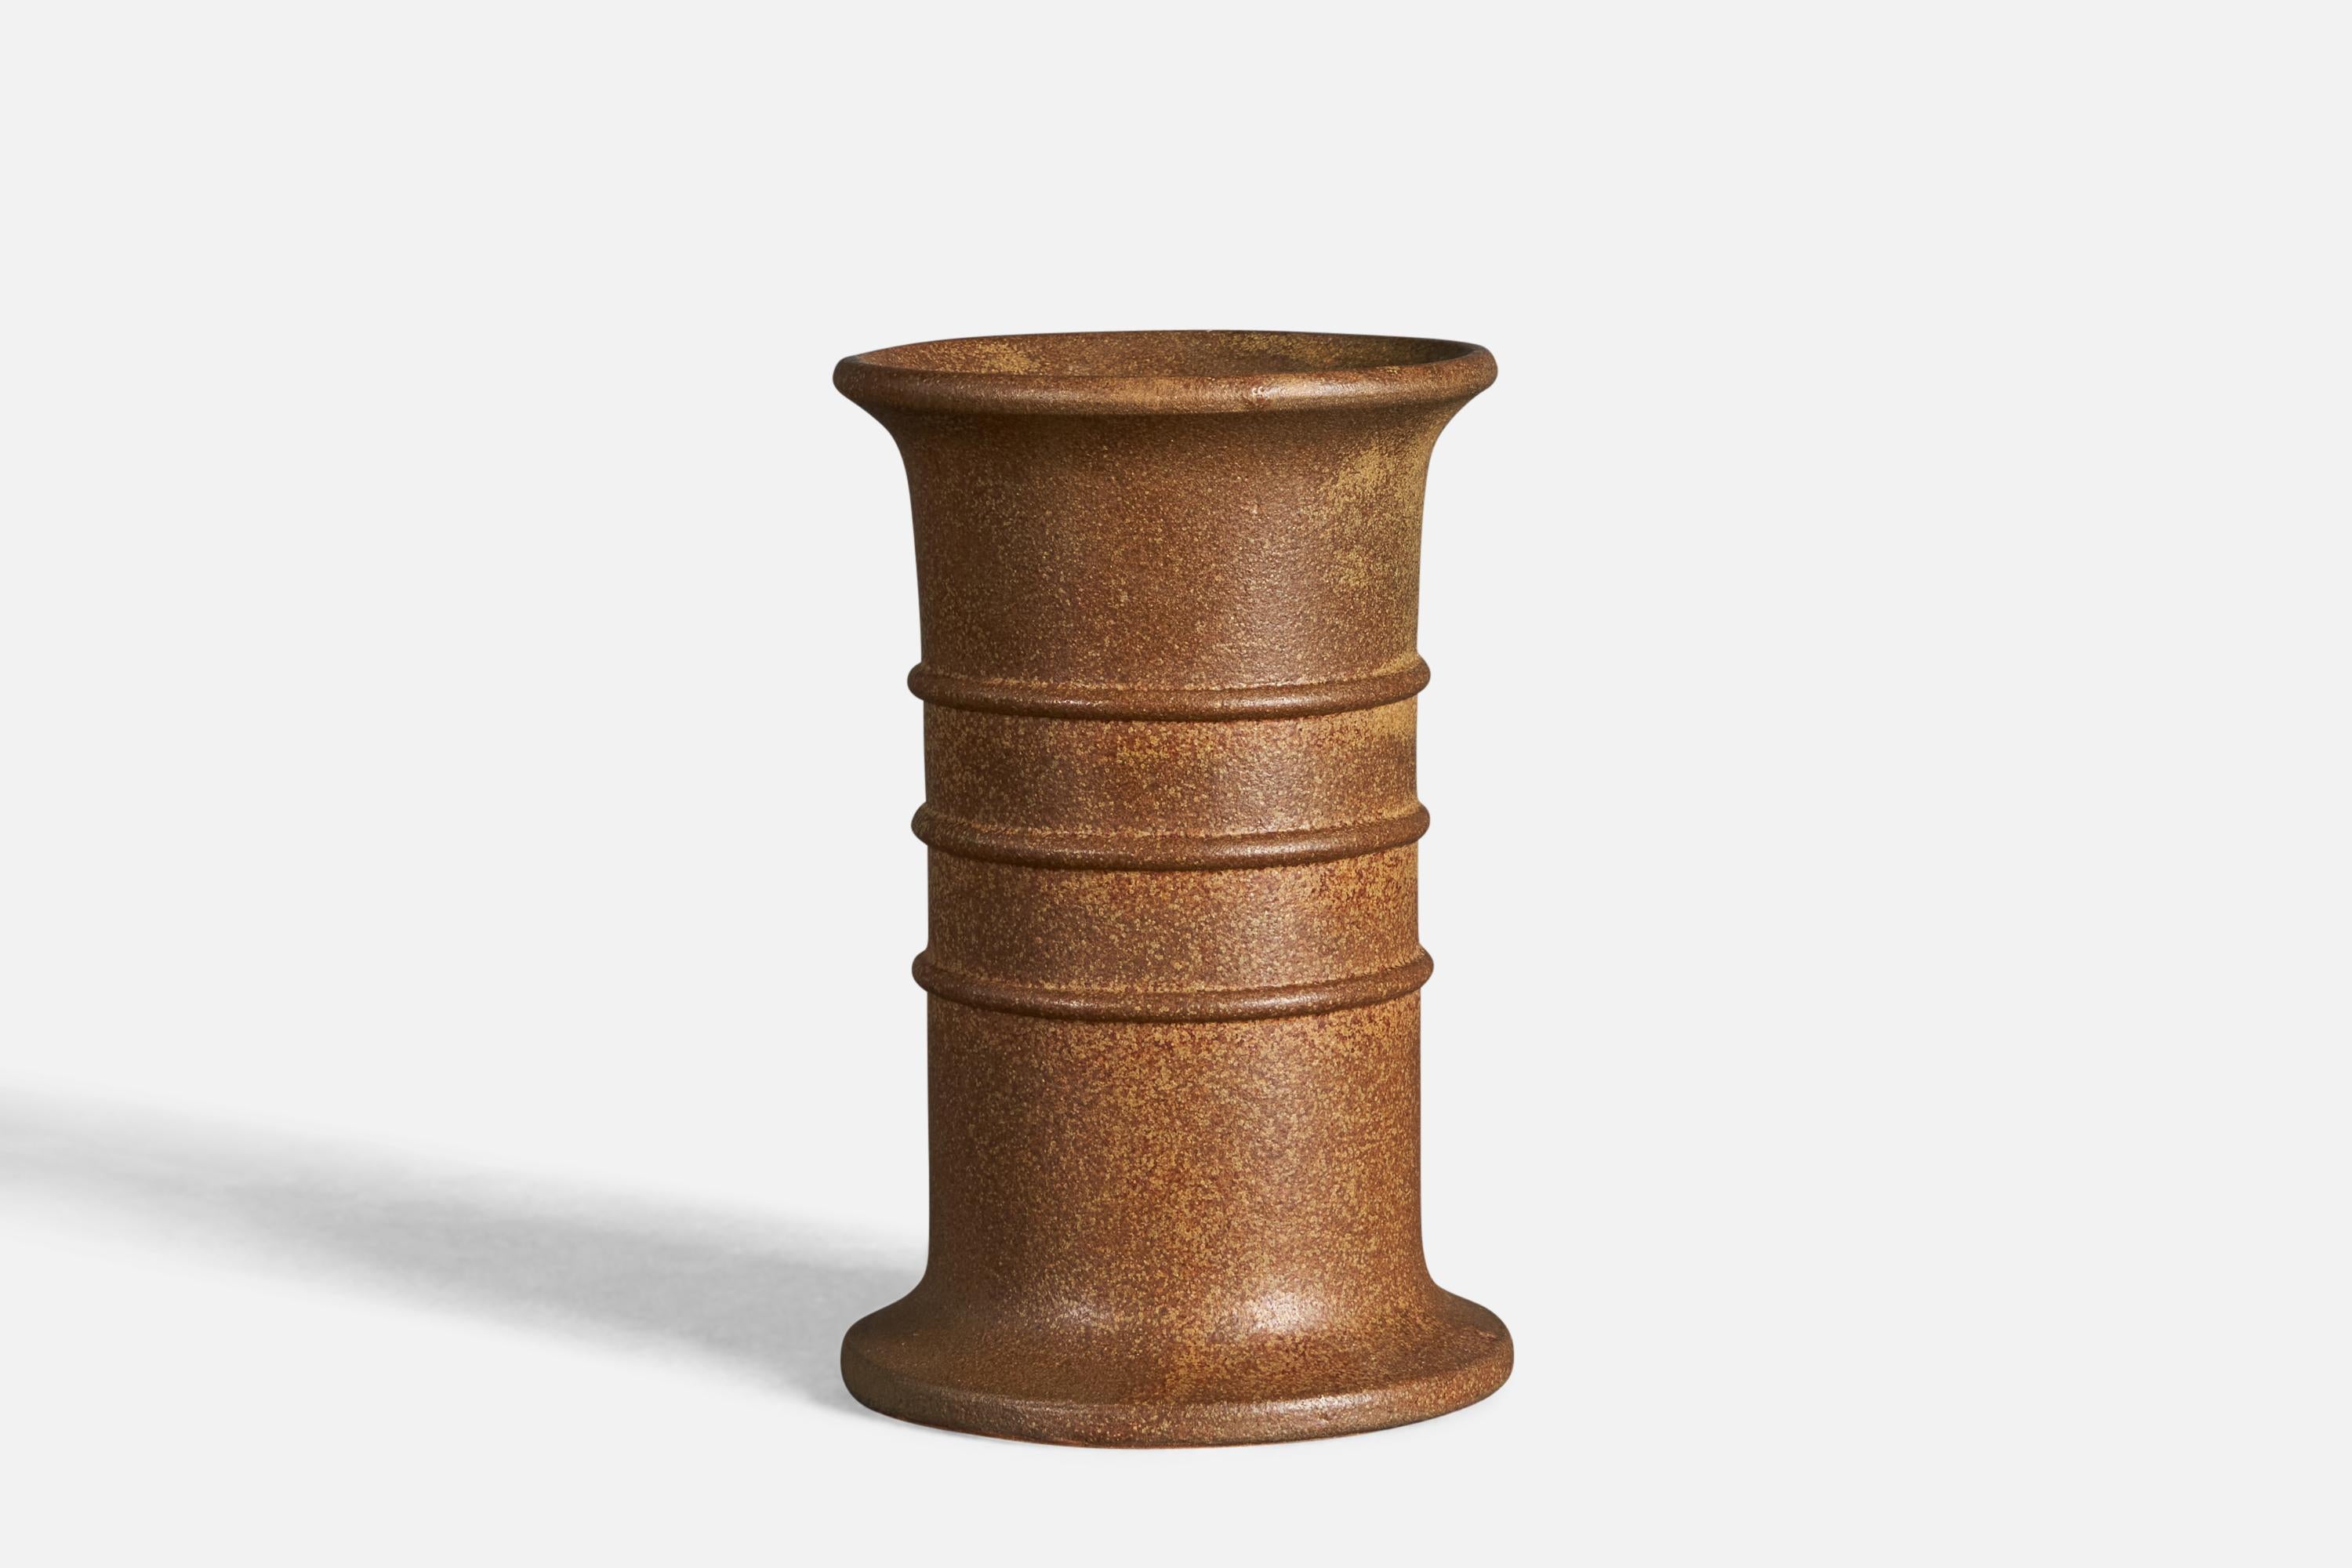 Vase aus braun glasiertem Steinzeug, entworfen und hergestellt von Arne Bang, Dänemark, ca. 1930er Jahre.